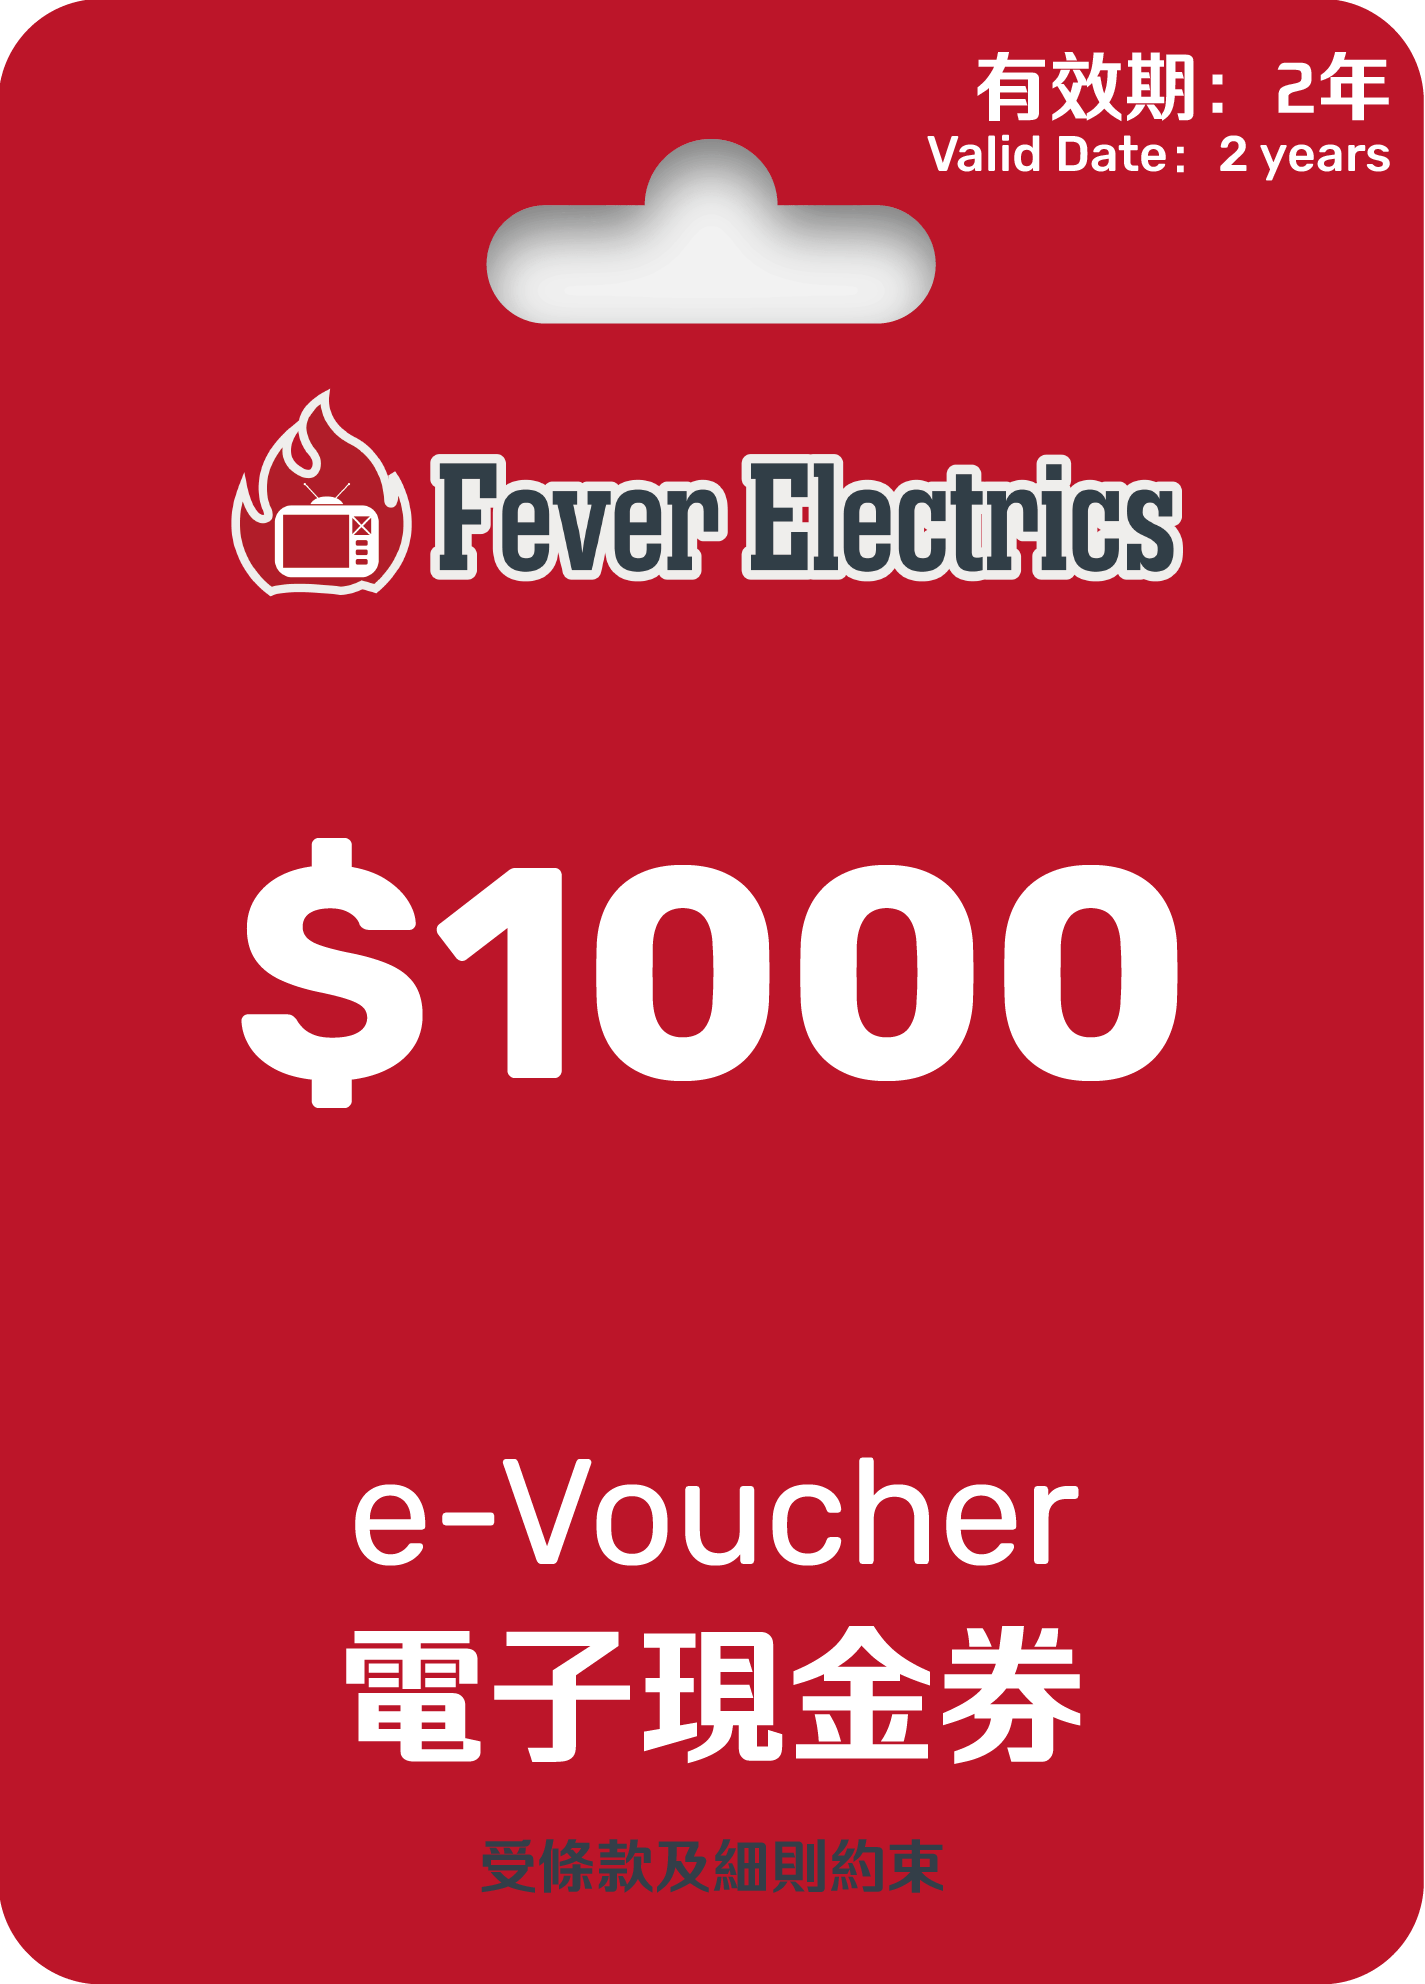 HK$1000 Fever e - Voucher (電子現金券) - Fever Electrics 電器熱網購平台